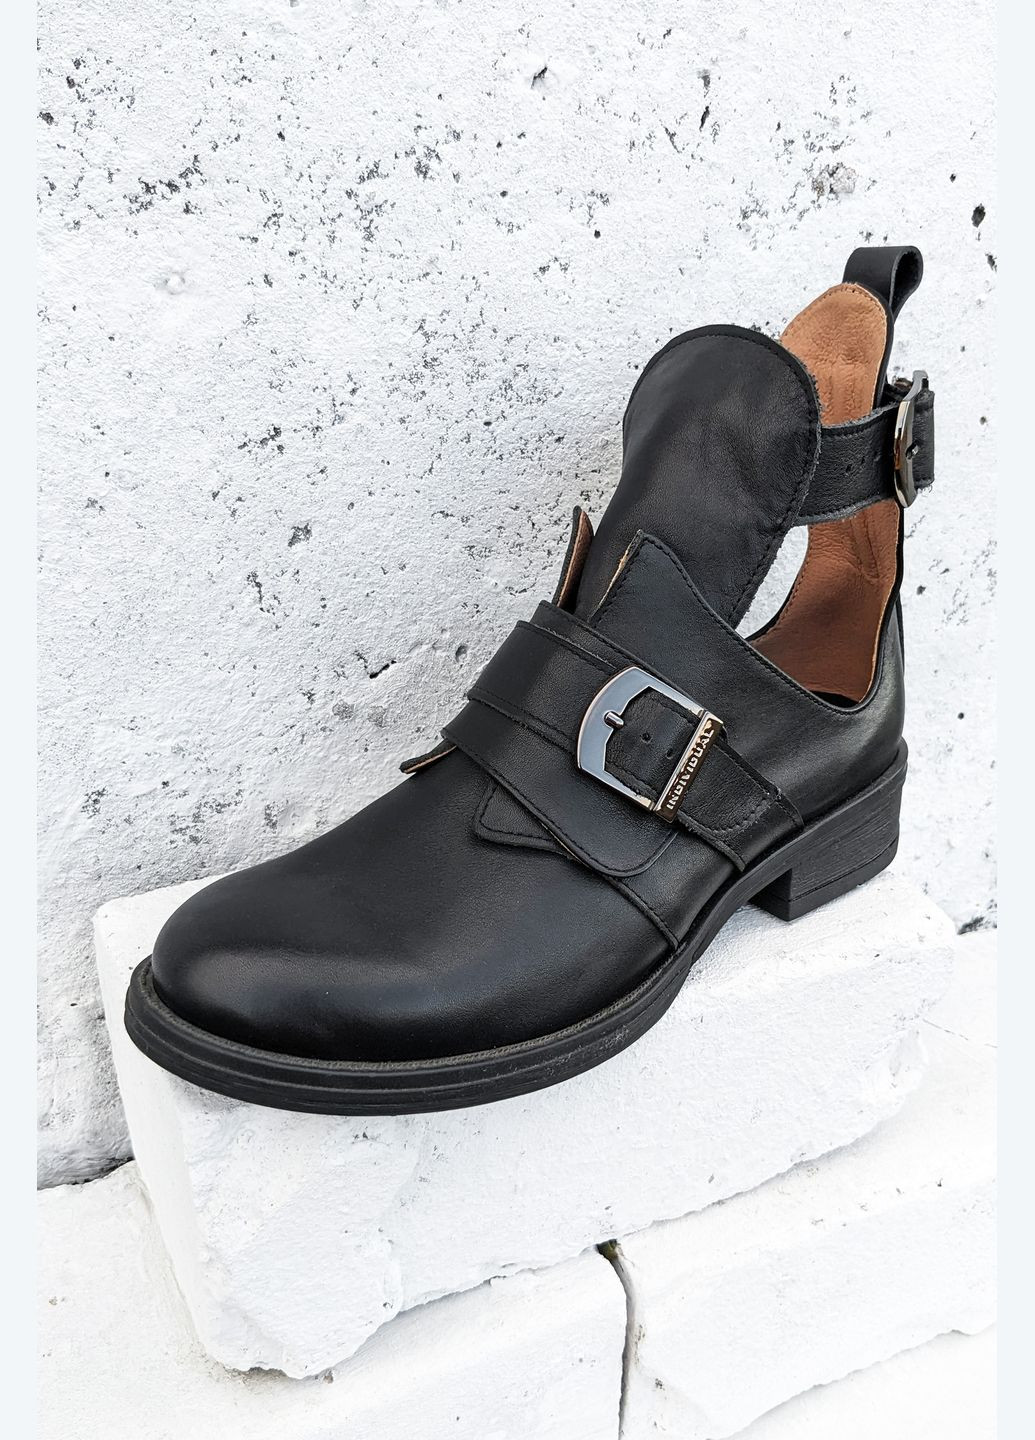 Туфли женские кожаные классические закрытые с пряжкой на невысоком каблуке InFashion на низком каблуке